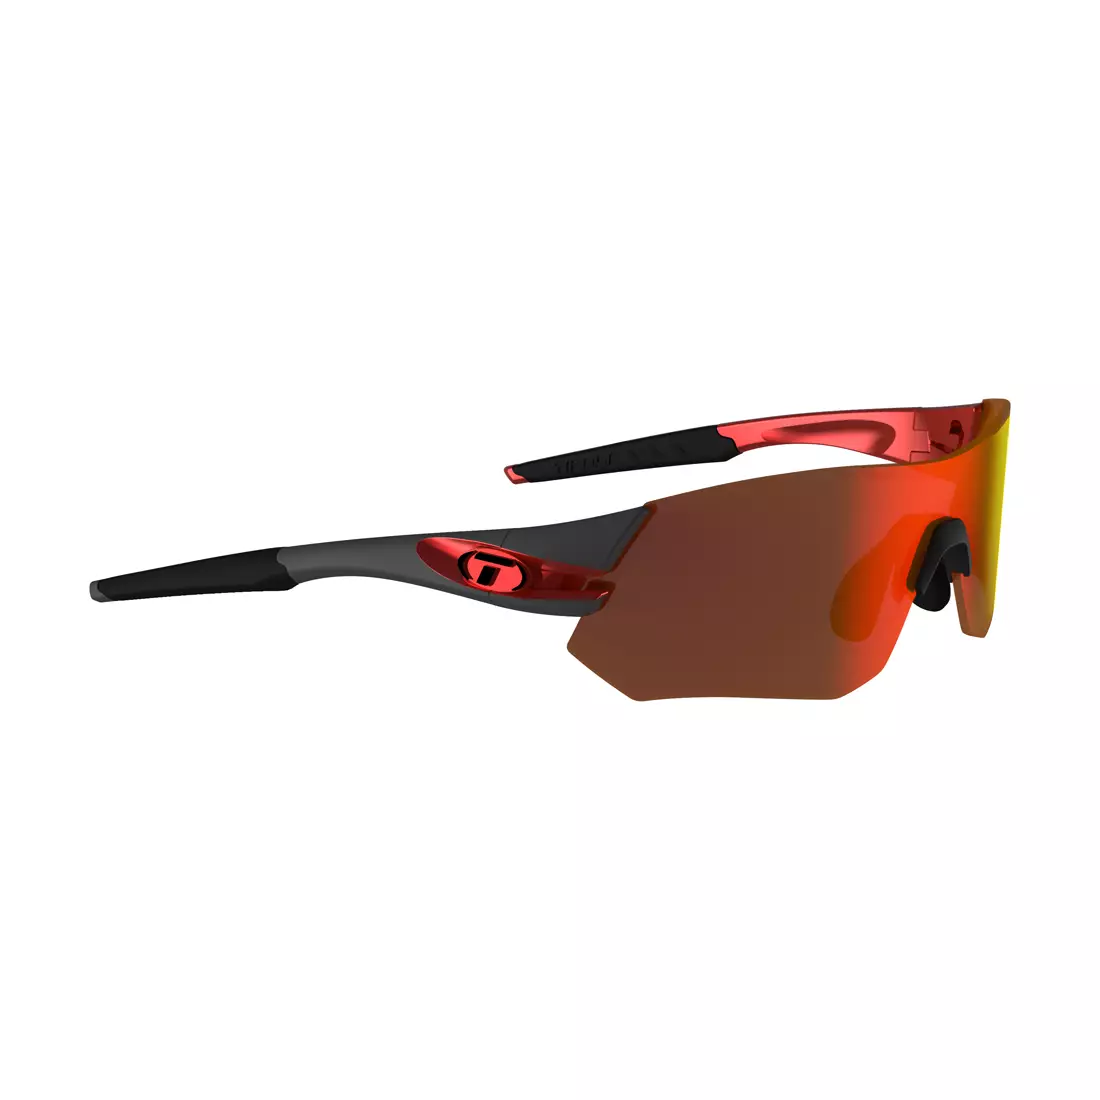 TIFOSI szemüveg cserélhető lencsével TSALI CLARION (Clarion red, AC Red, Clear) gunmetal red TFI-1640109721